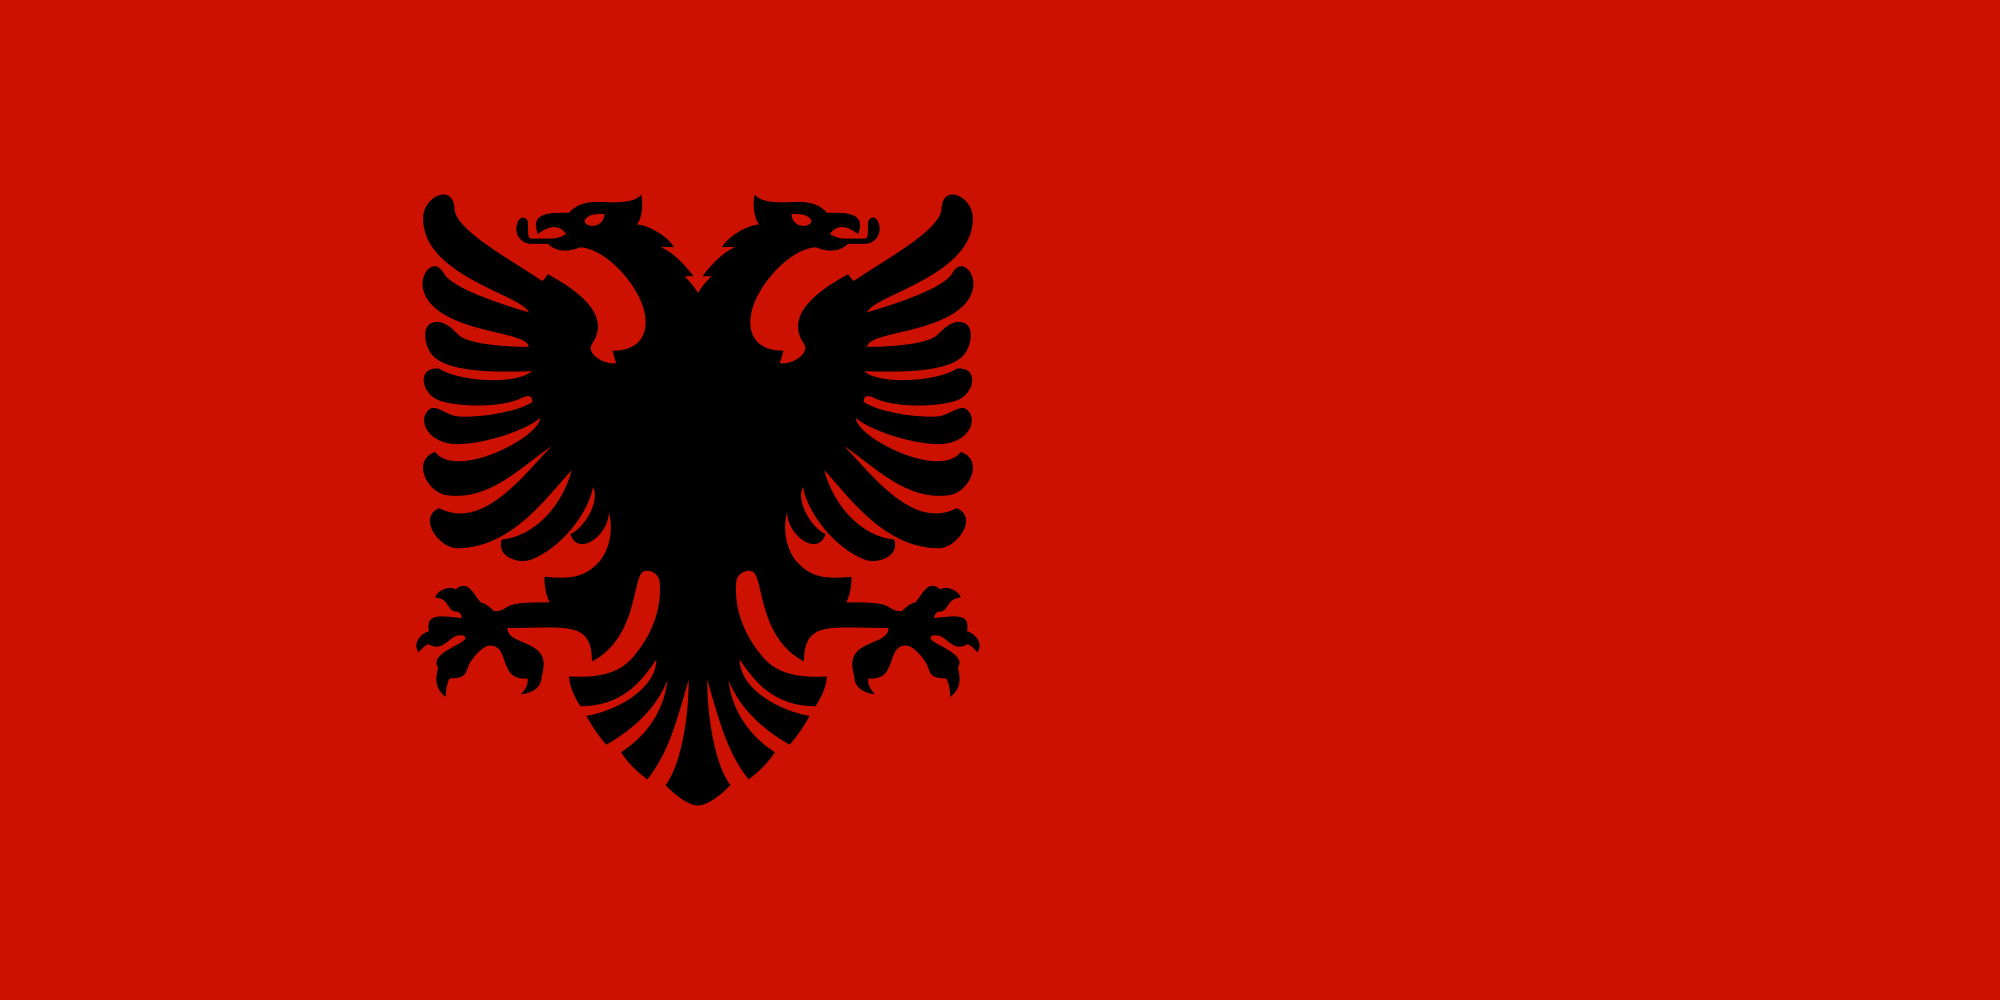 Flag Of Albania wallpaper, Misc, HQ Flag Of Albania pictureK Wallpaper 2019